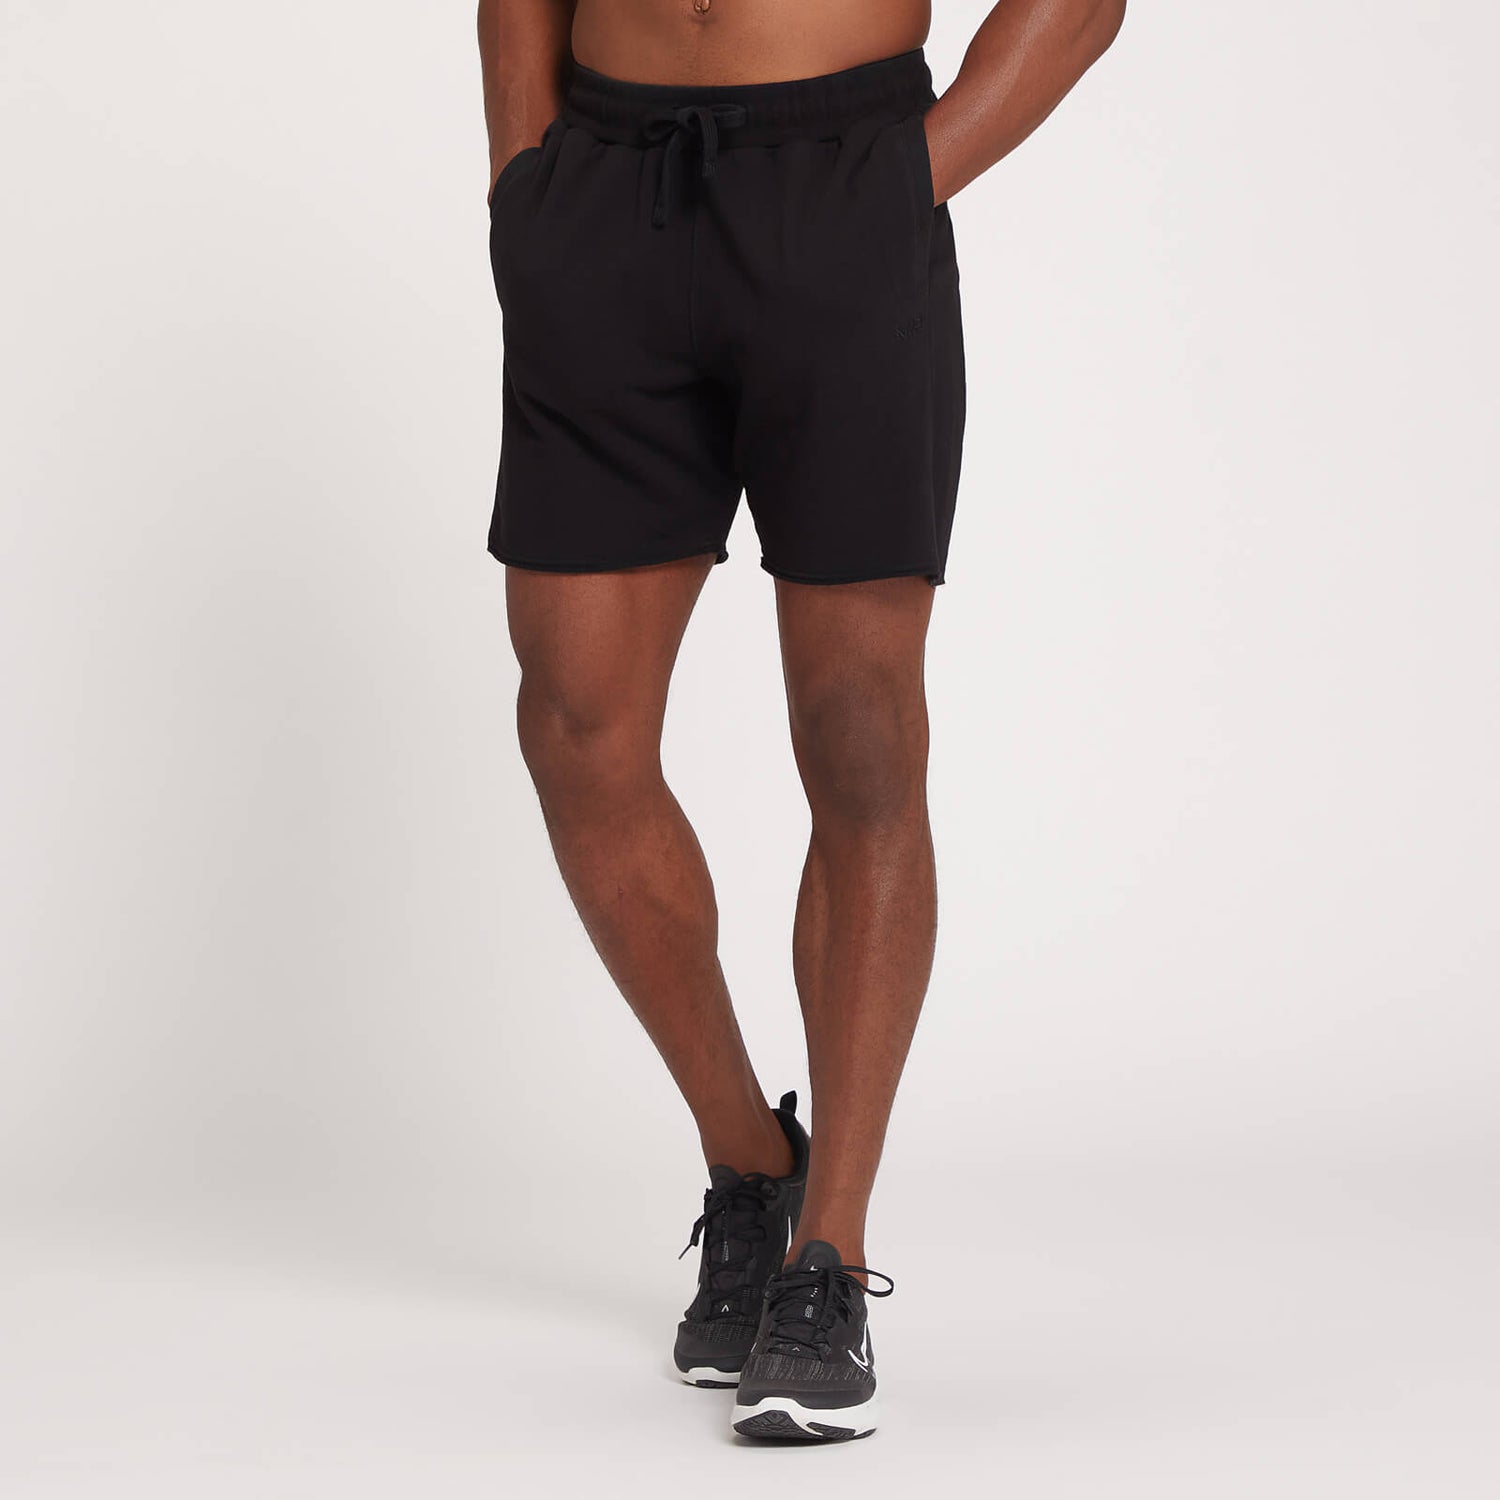 Pantalón corto de entrenamiento de edición limitada para hombre de MP - Negro oscuro​ - XXS